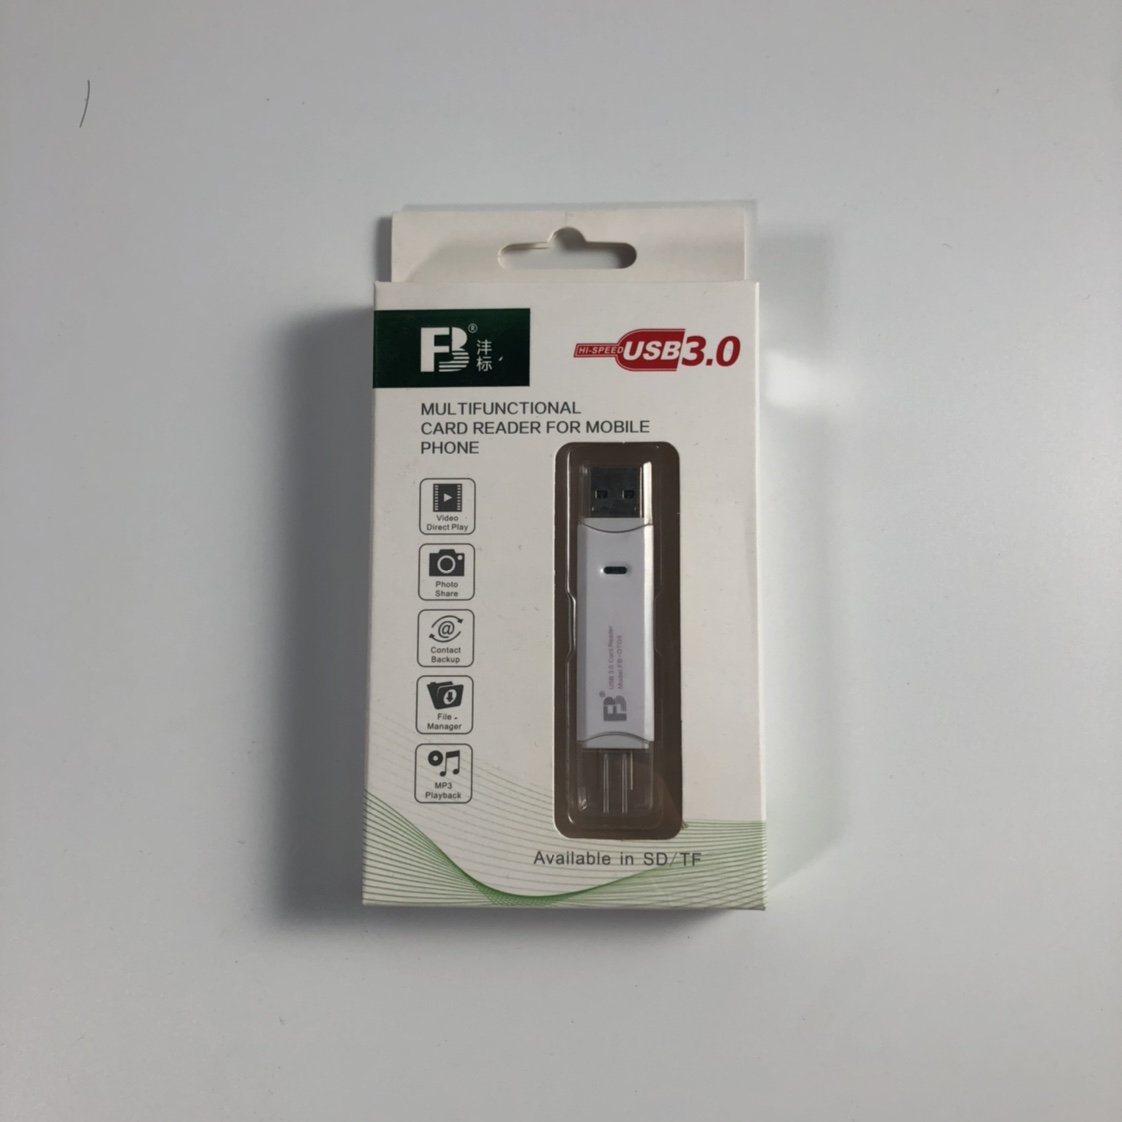 沣标手机读卡器USB3.0
Available in SD/TF